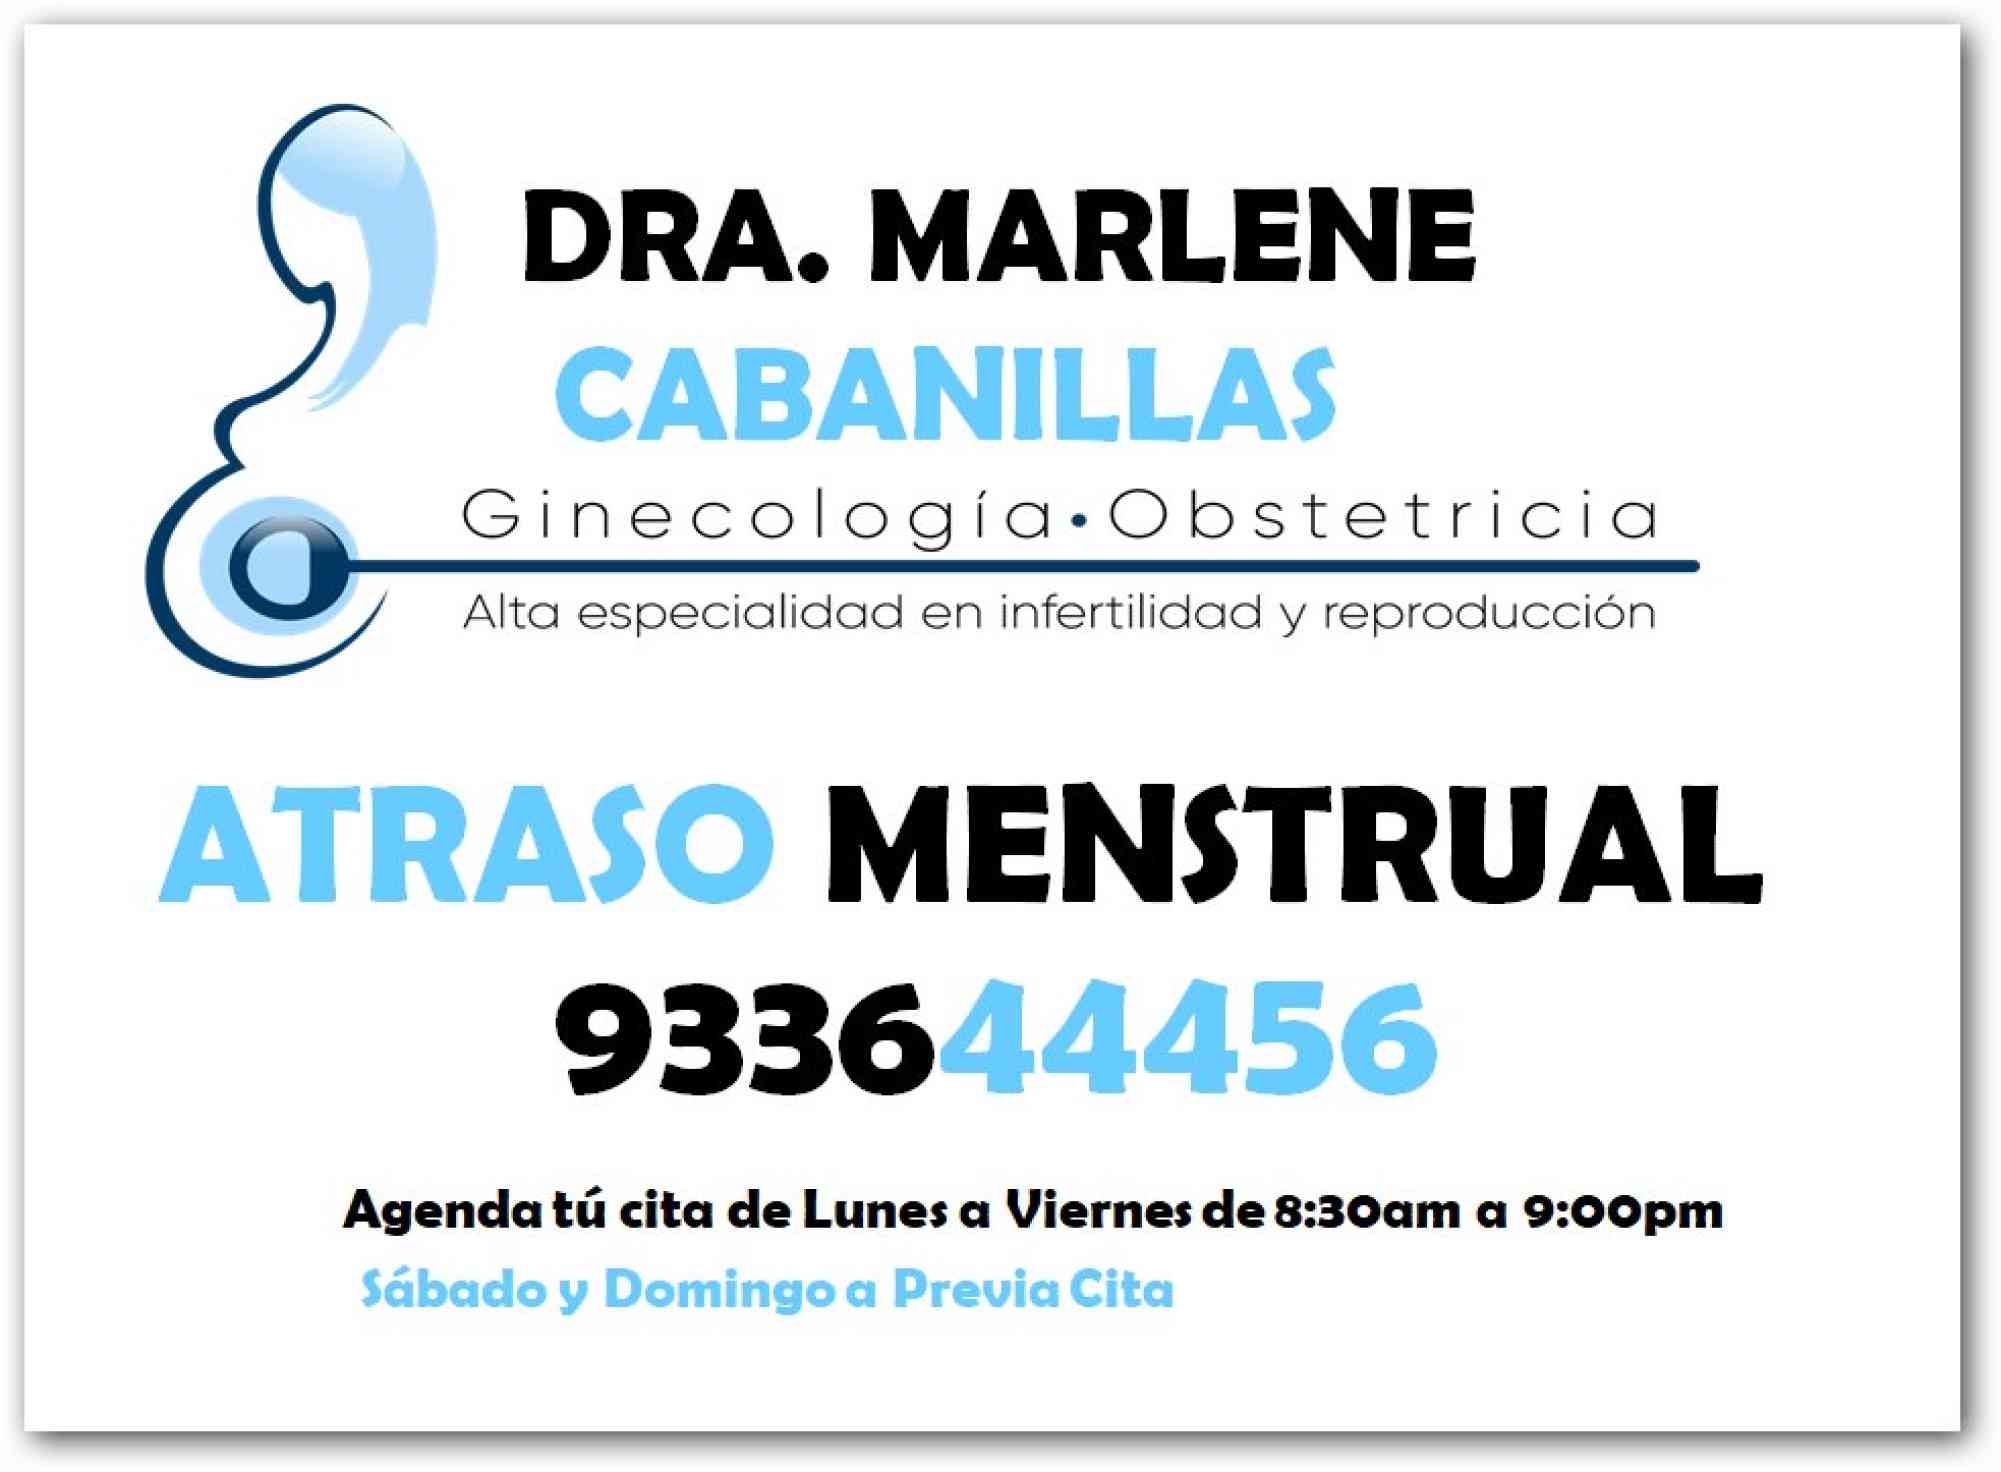 Anuncios de Salud y Equipamiento Deportivo - Anuncios Clasificados Gratis - Todoclasificados, atraso menstrual- 933644456- Ucayali